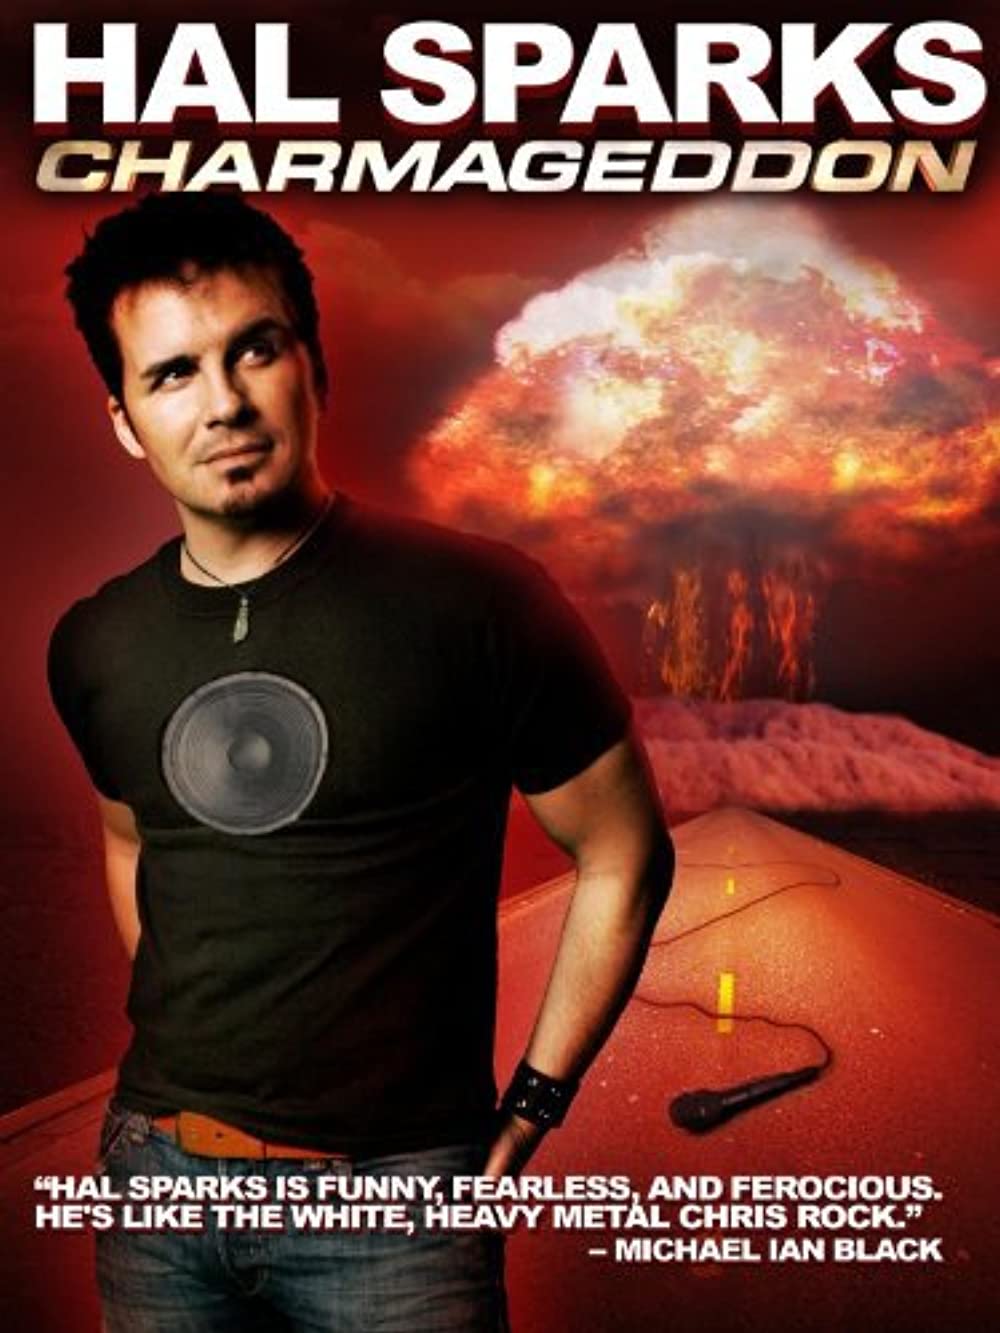 ดูหนังออนไลน์ Hal Sparks Charmageddon (2010) ฮัล สปาร์คส์ ชาร์มาเก็ดดอน [Soundtrack]